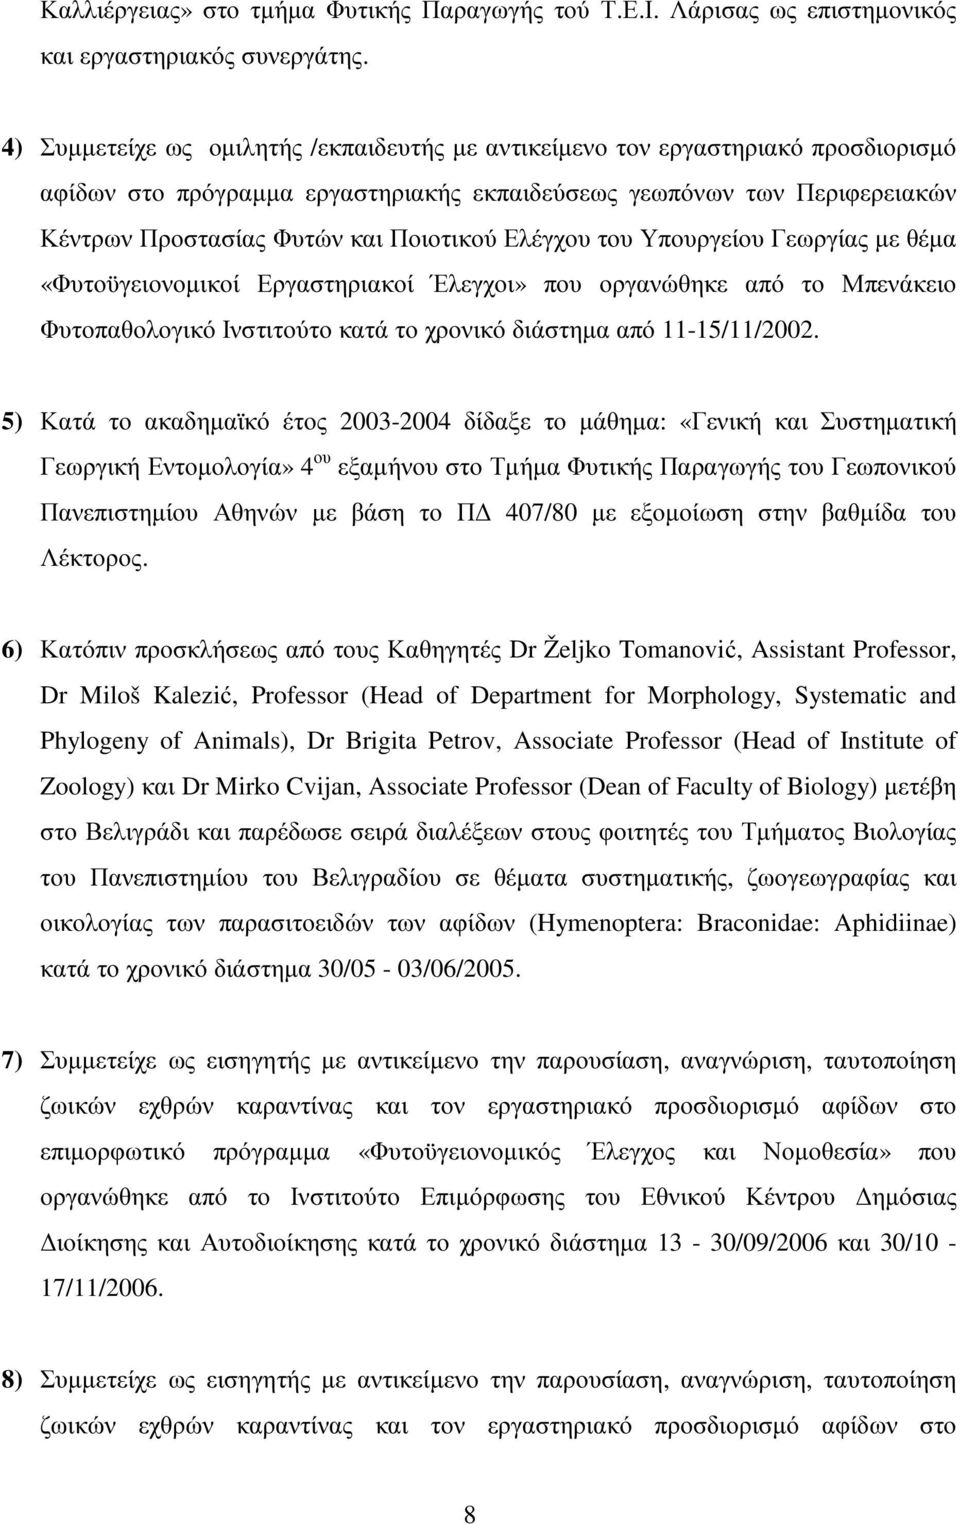 Ελέγχου του Υπουργείου Γεωργίας µε θέµα «Φυτοϋγειονοµικοί Εργαστηριακοί Έλεγχοι» που οργανώθηκε από το Μπενάκειο Φυτοπαθολογικό Ινστιτούτο κατά το χρονικό διάστηµα από 11-15/11/2002.